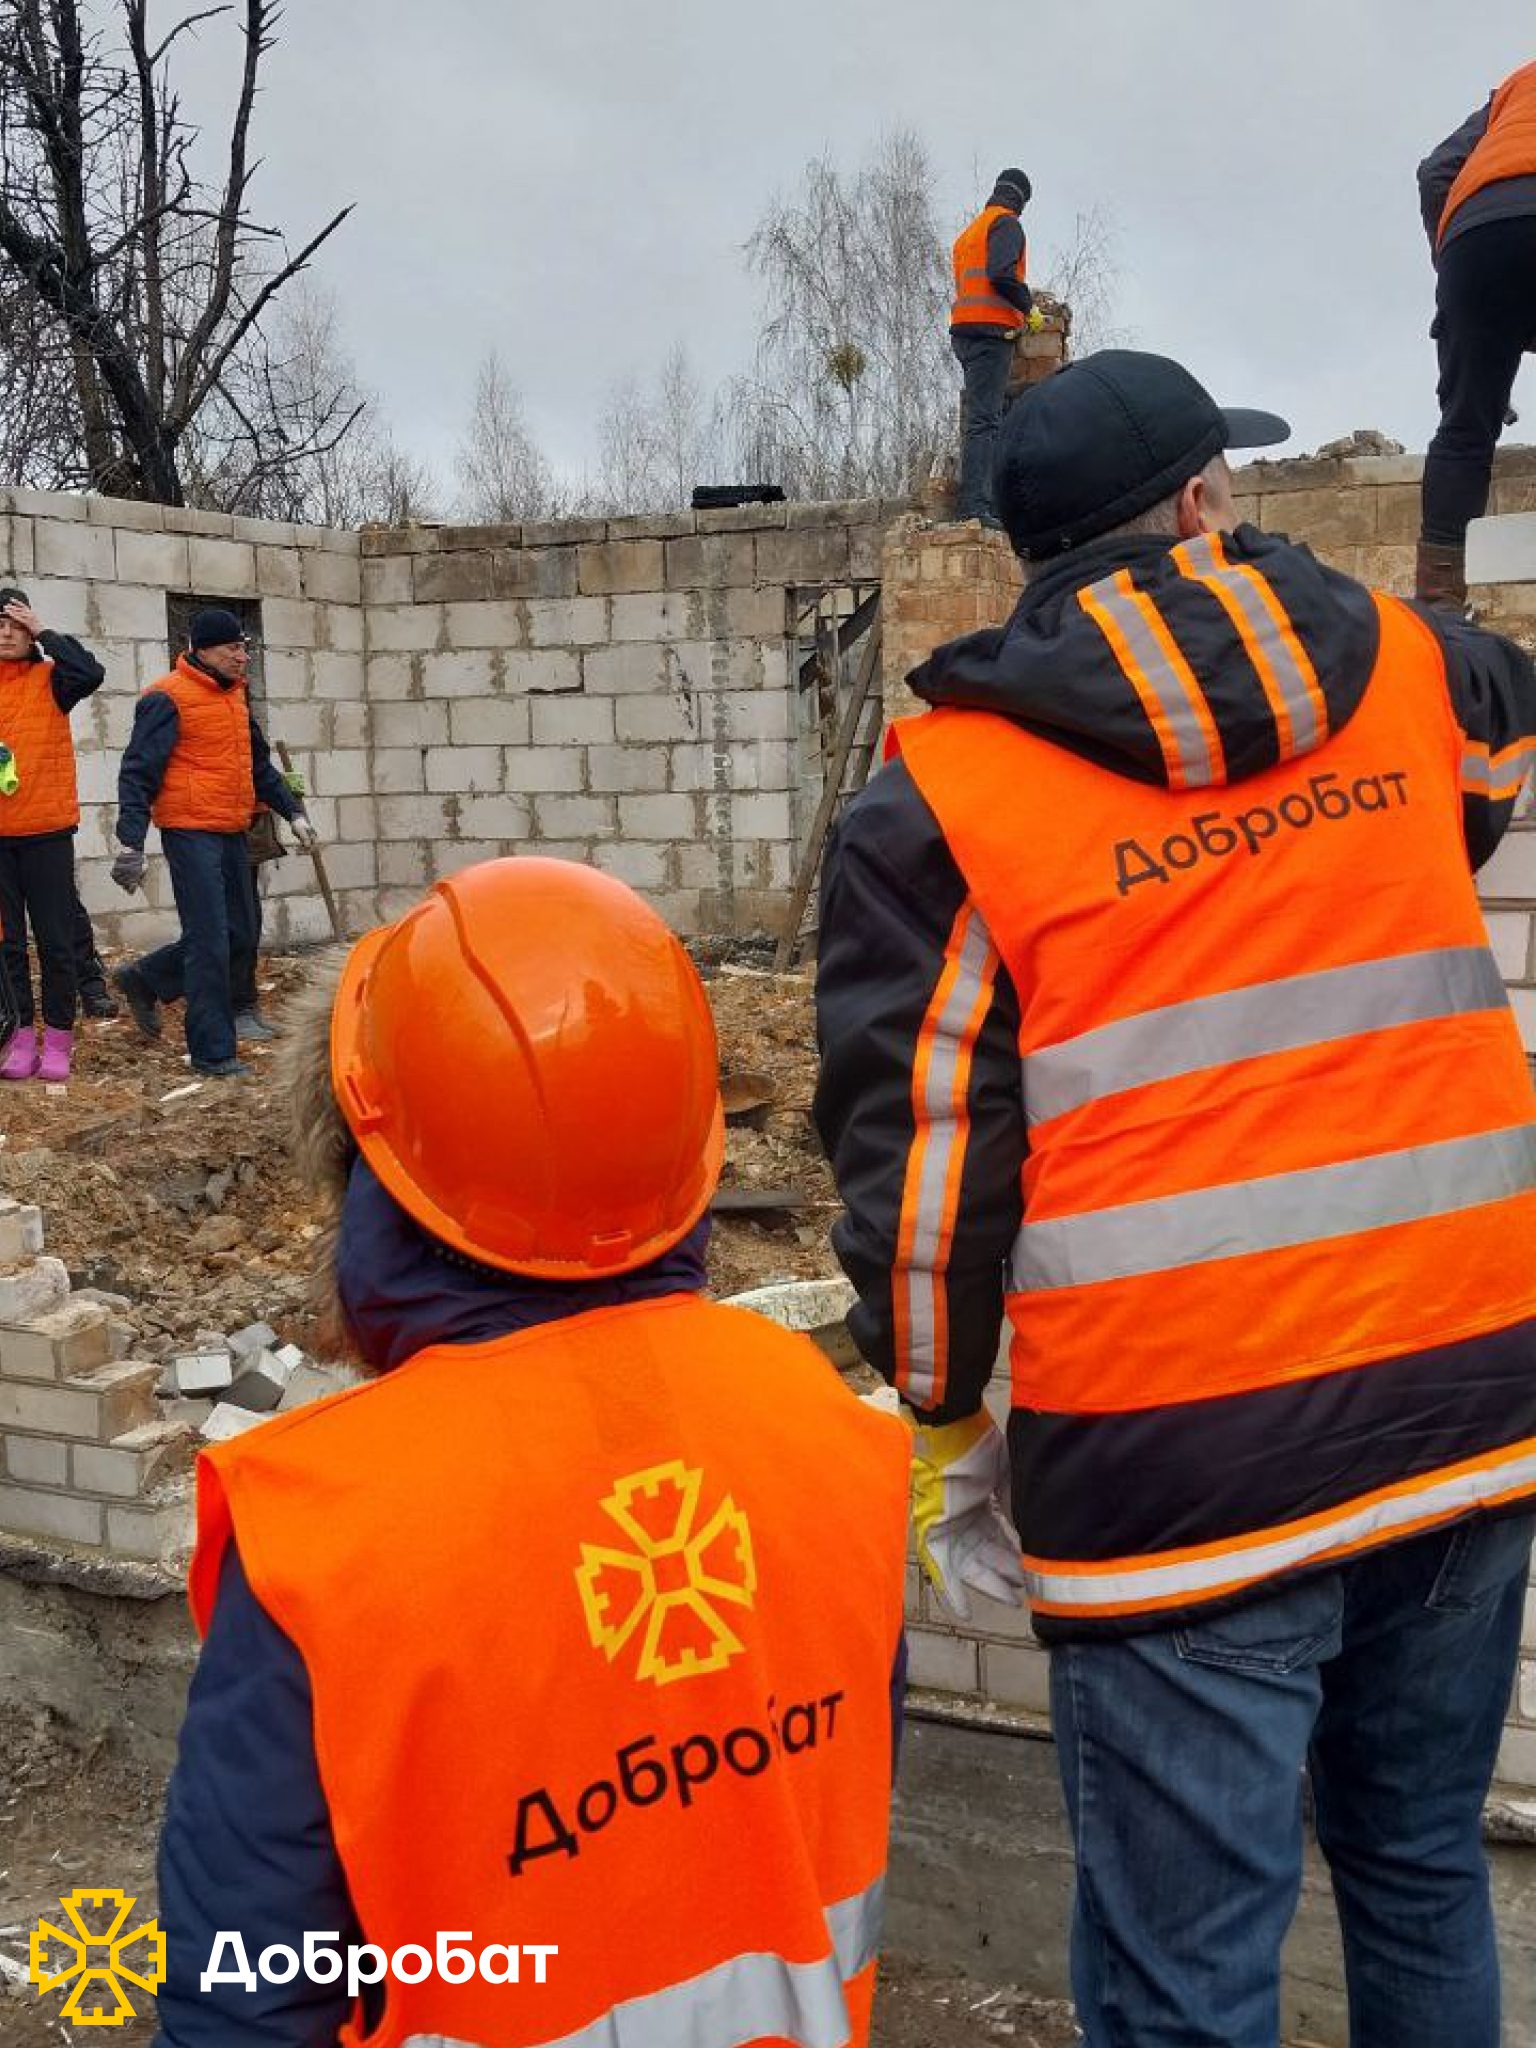 Добробатівська весна стартувала: понад 220 волонтерів долучилися до нагальної відбудови минулого тижня